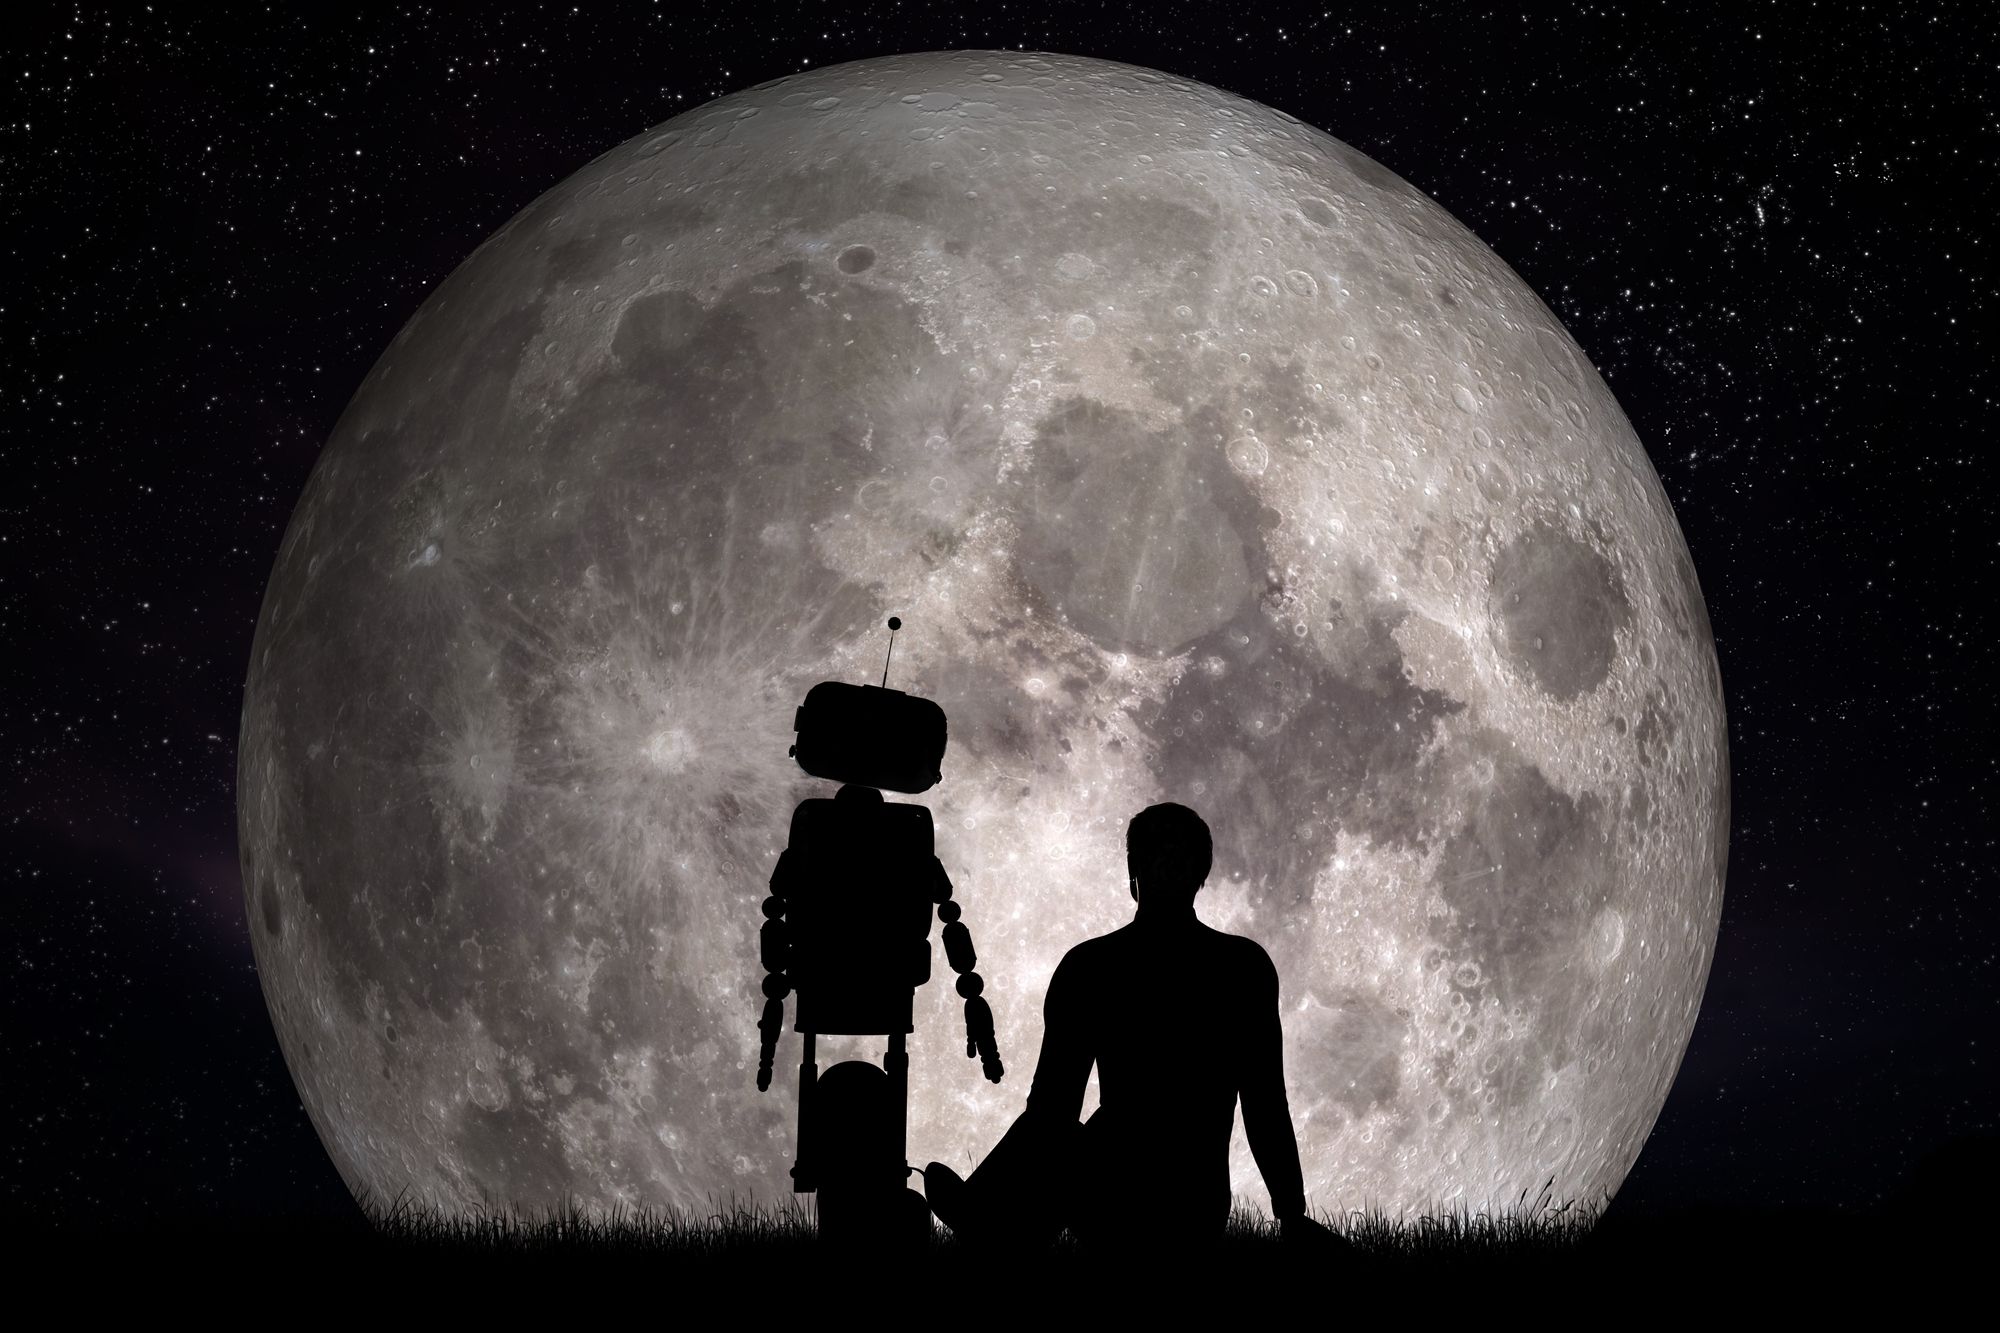 Les silhouettes d’une personne et d’un robot se dessinent sur la pleine lune. 